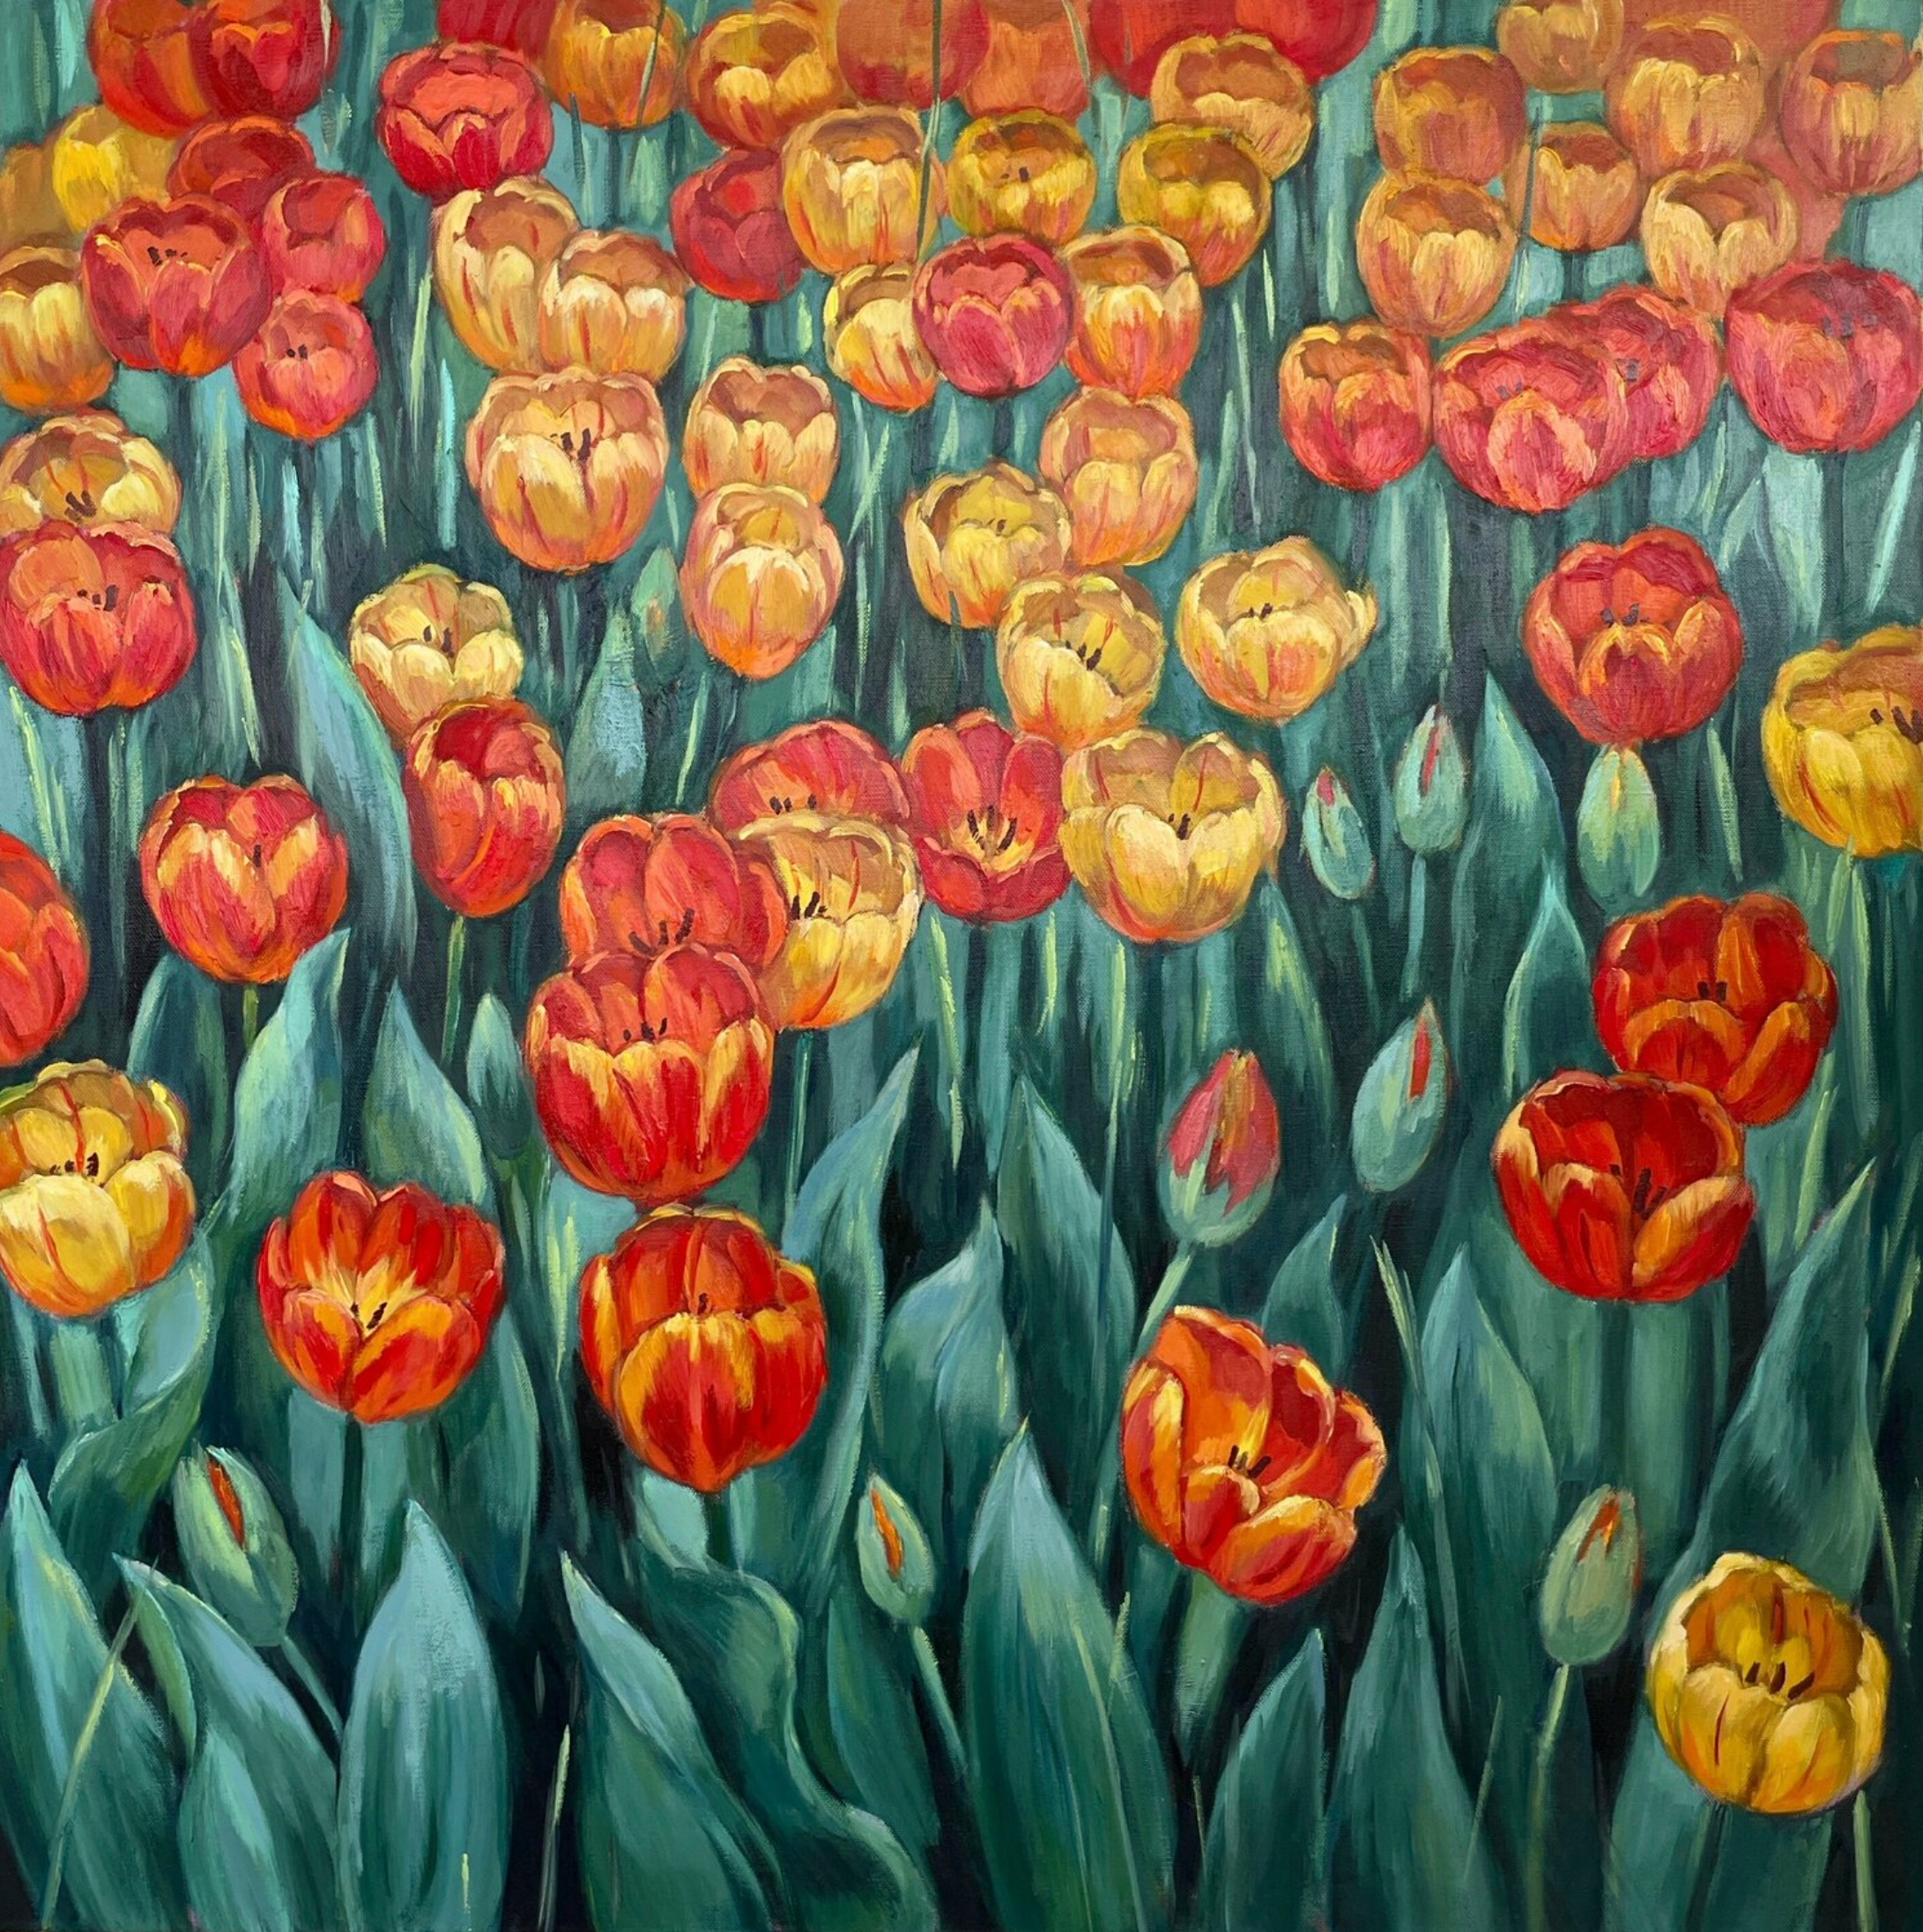 Le tableau "Summer Glimpse" d'Anna Reznikova montre une magnifique composition florale avec des tulipes multicolores.  Les fleurs sont roses, roses et rouges et jaunes, avec des feuilles vert clair. Peinture à l'huile originale, réalisée selon une technique multicouche.